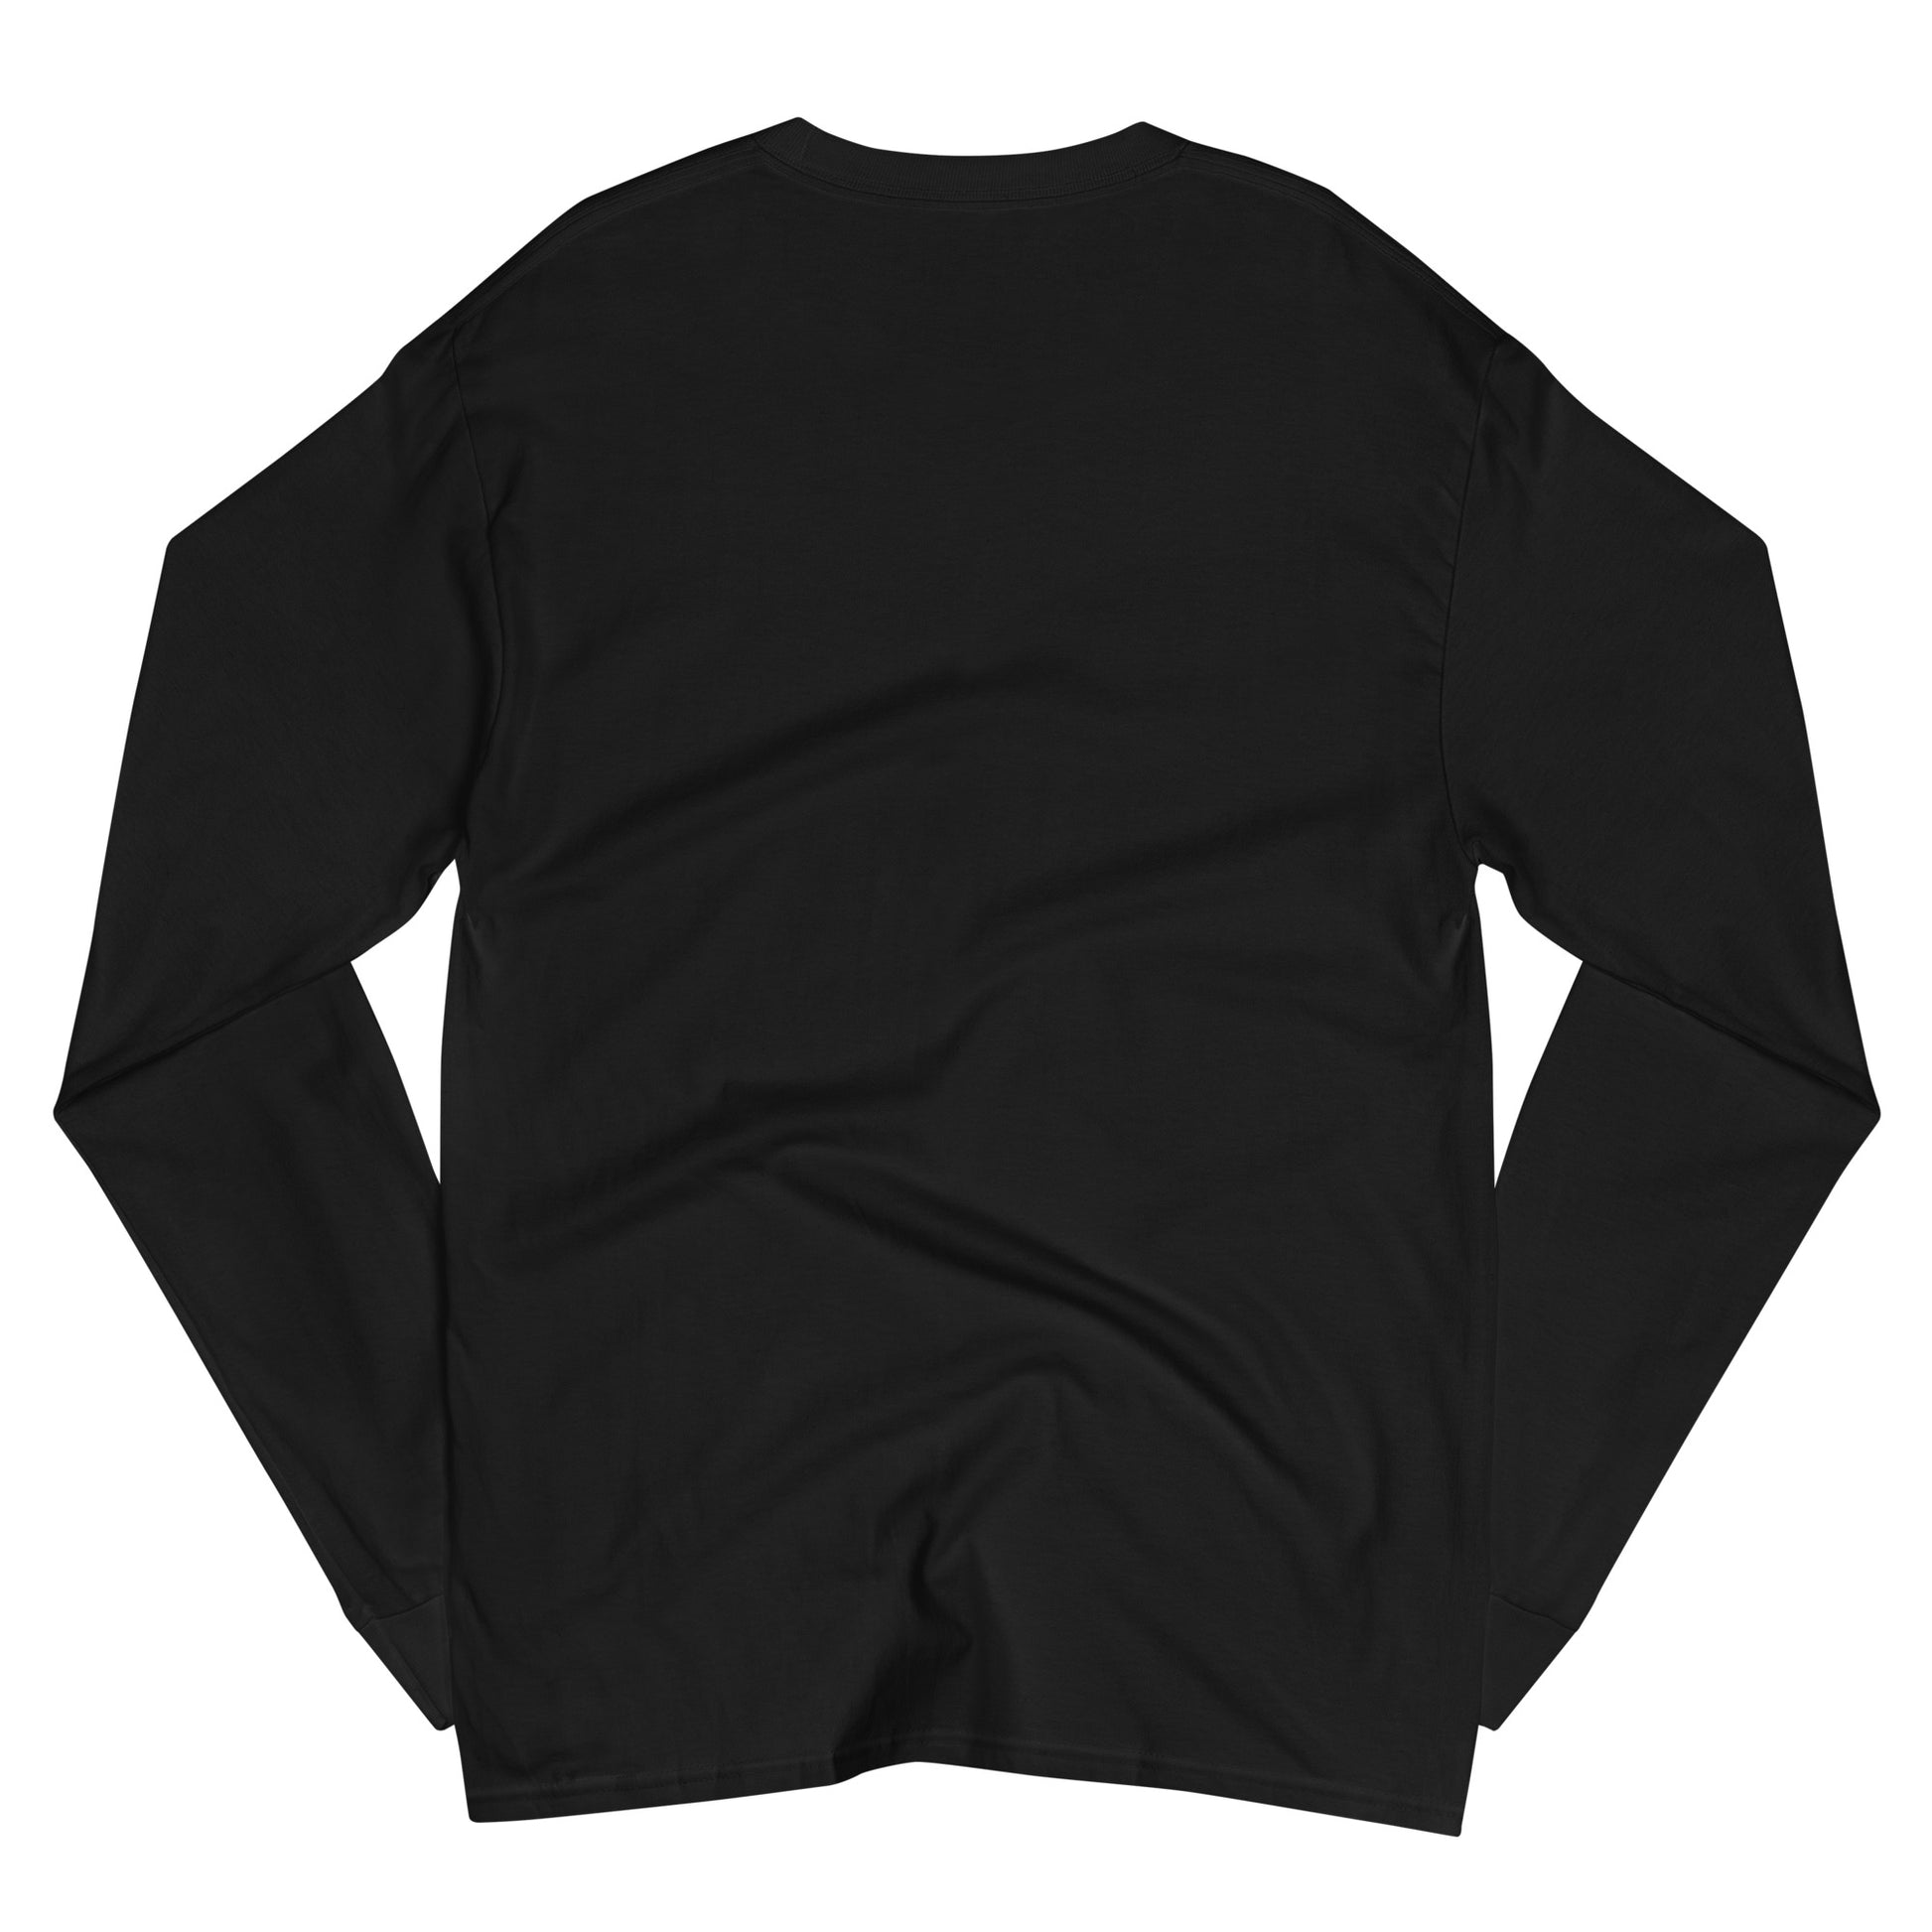 Time To Shine Men's Champion Long Sleeve Shirt |Unique Designs ONLYZ3AL